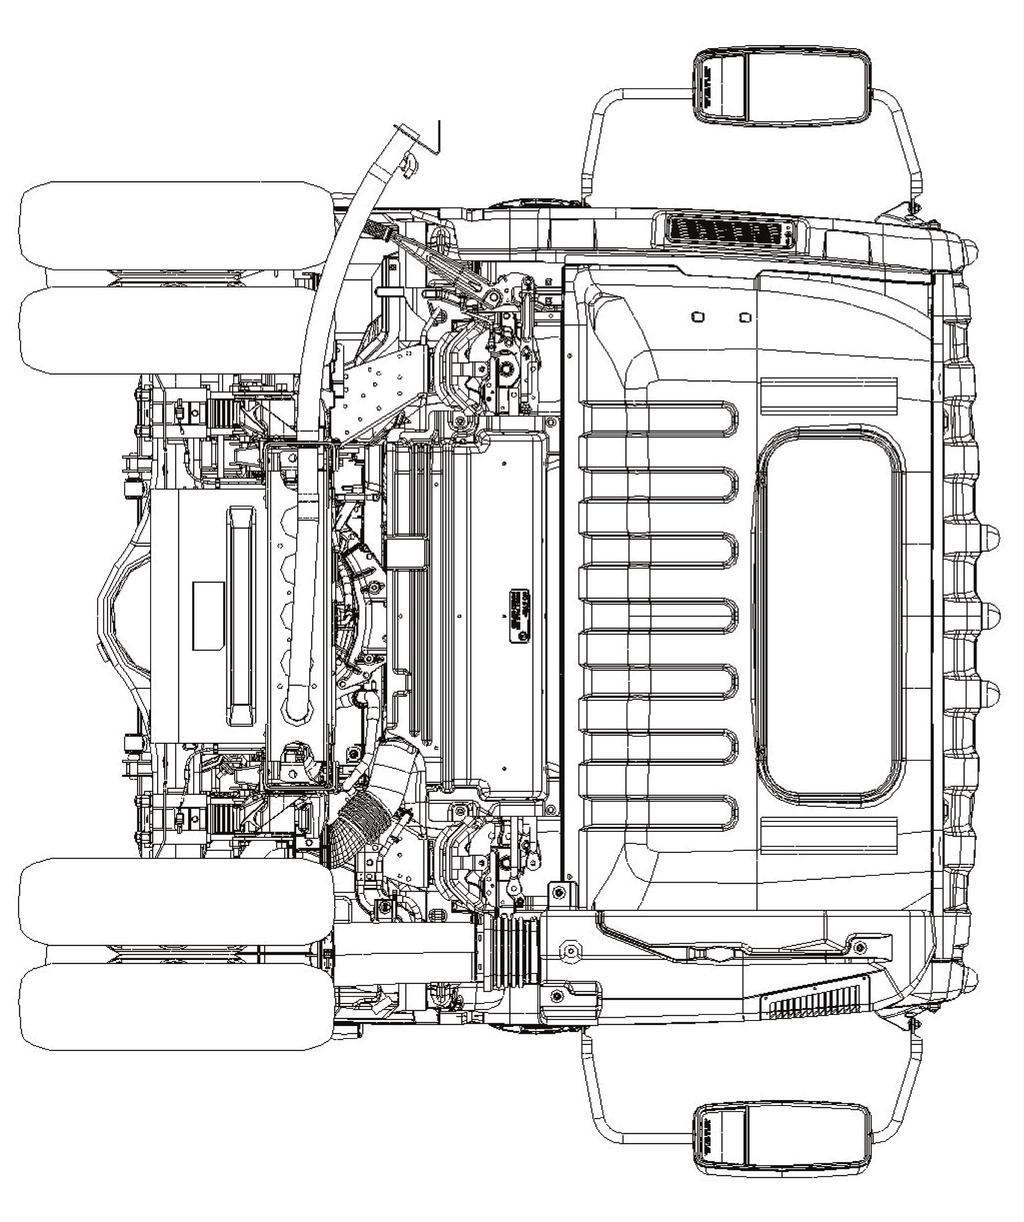 2015 Isuzu Truck Rear View Fuel Fill Dimension: